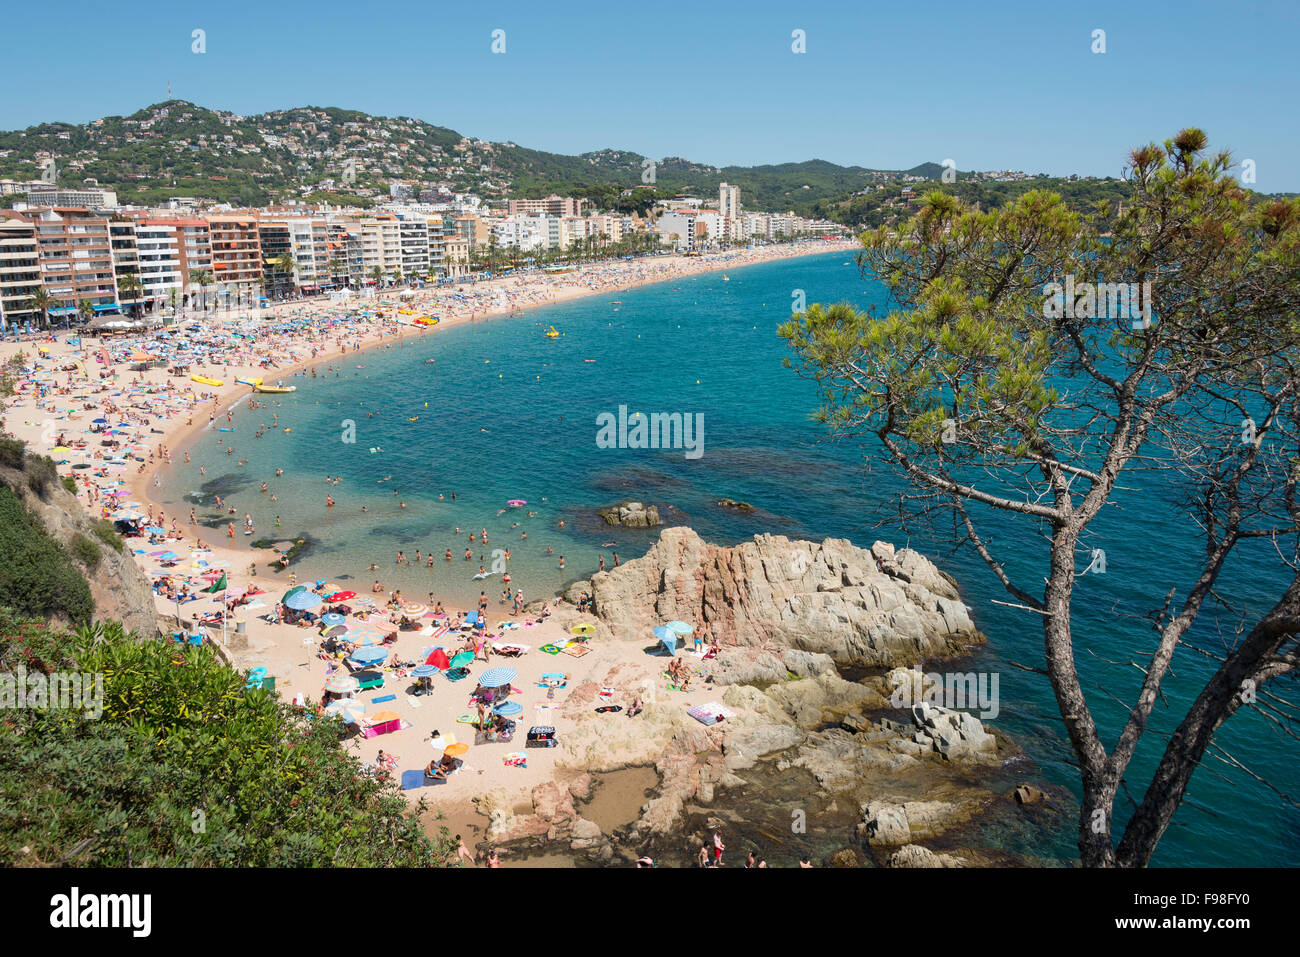 La spiaggia di Lloret, Lloret de Mar, Costa Brava, provincia di Girona, in Catalogna, Spagna Foto Stock